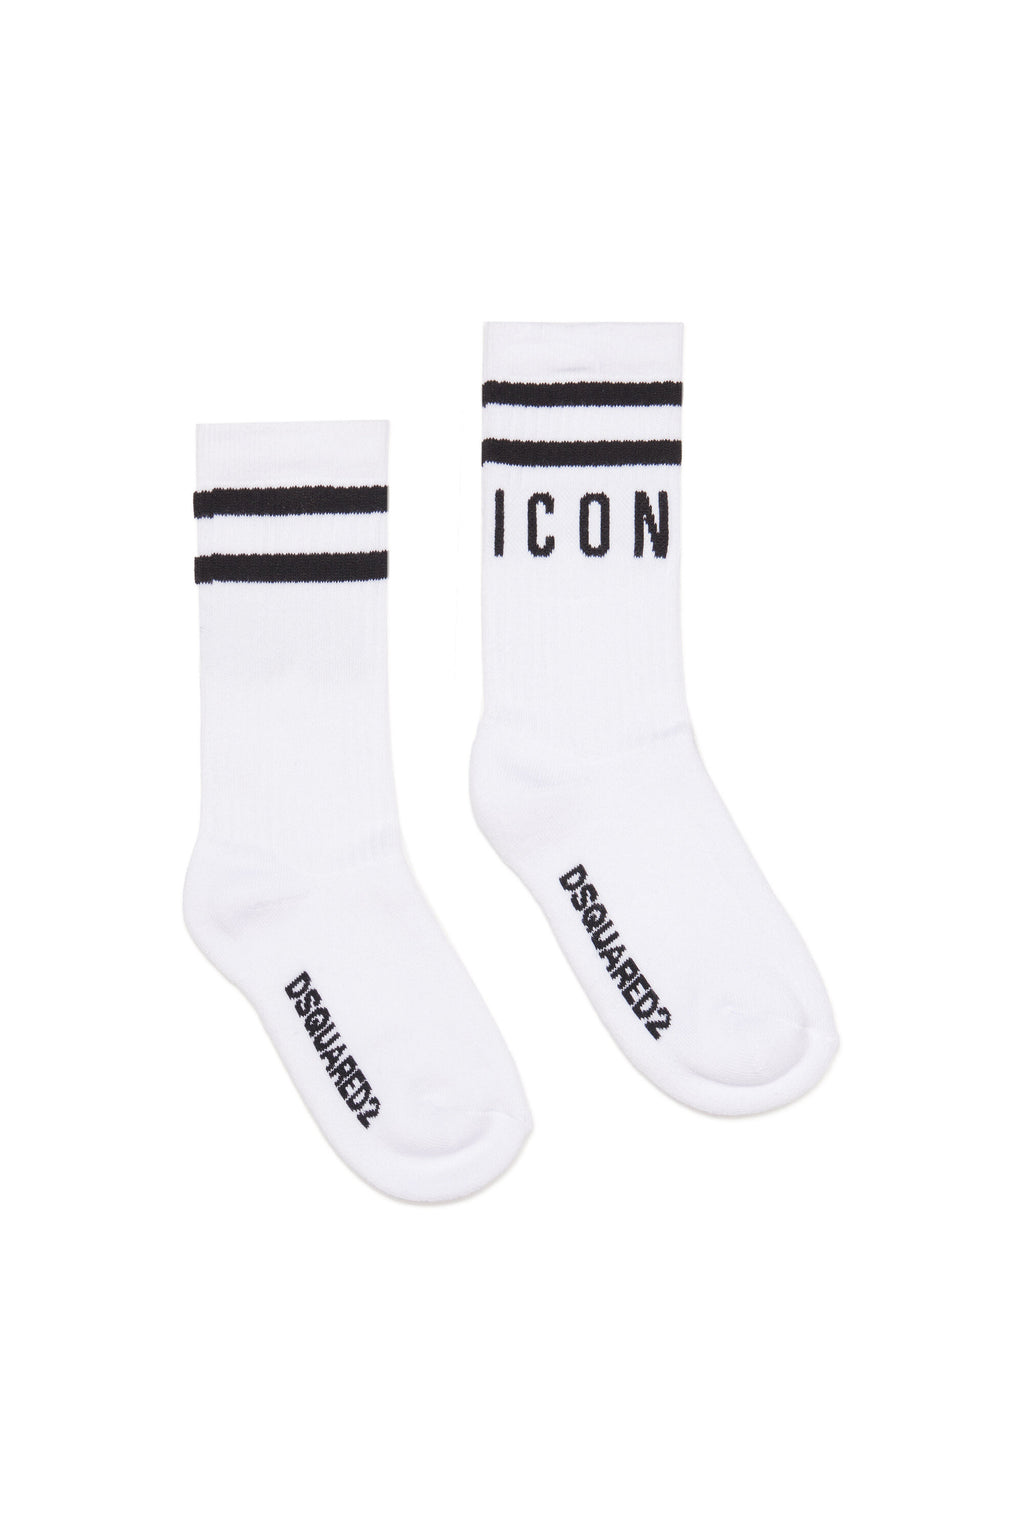 White socks with Icon logo